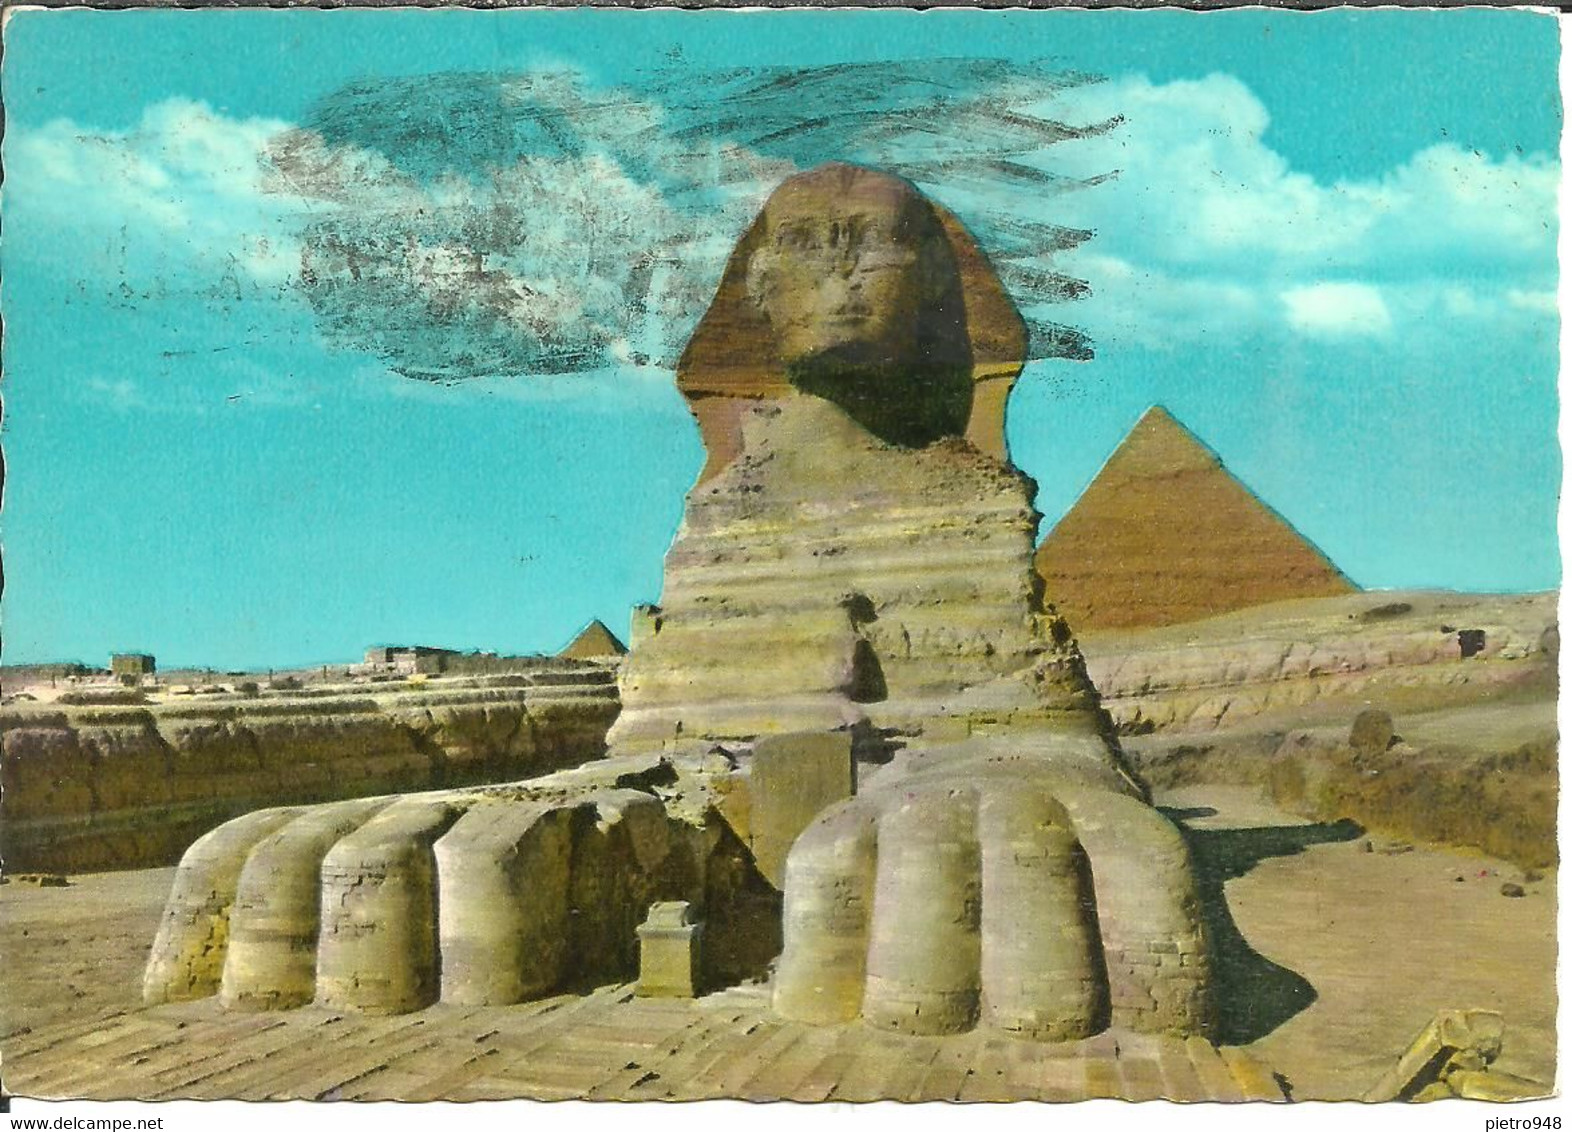 Giza (Egitto, Egypt) The Great Sphinx And Pyramids, Sfinge E Piramidi - Sphinx